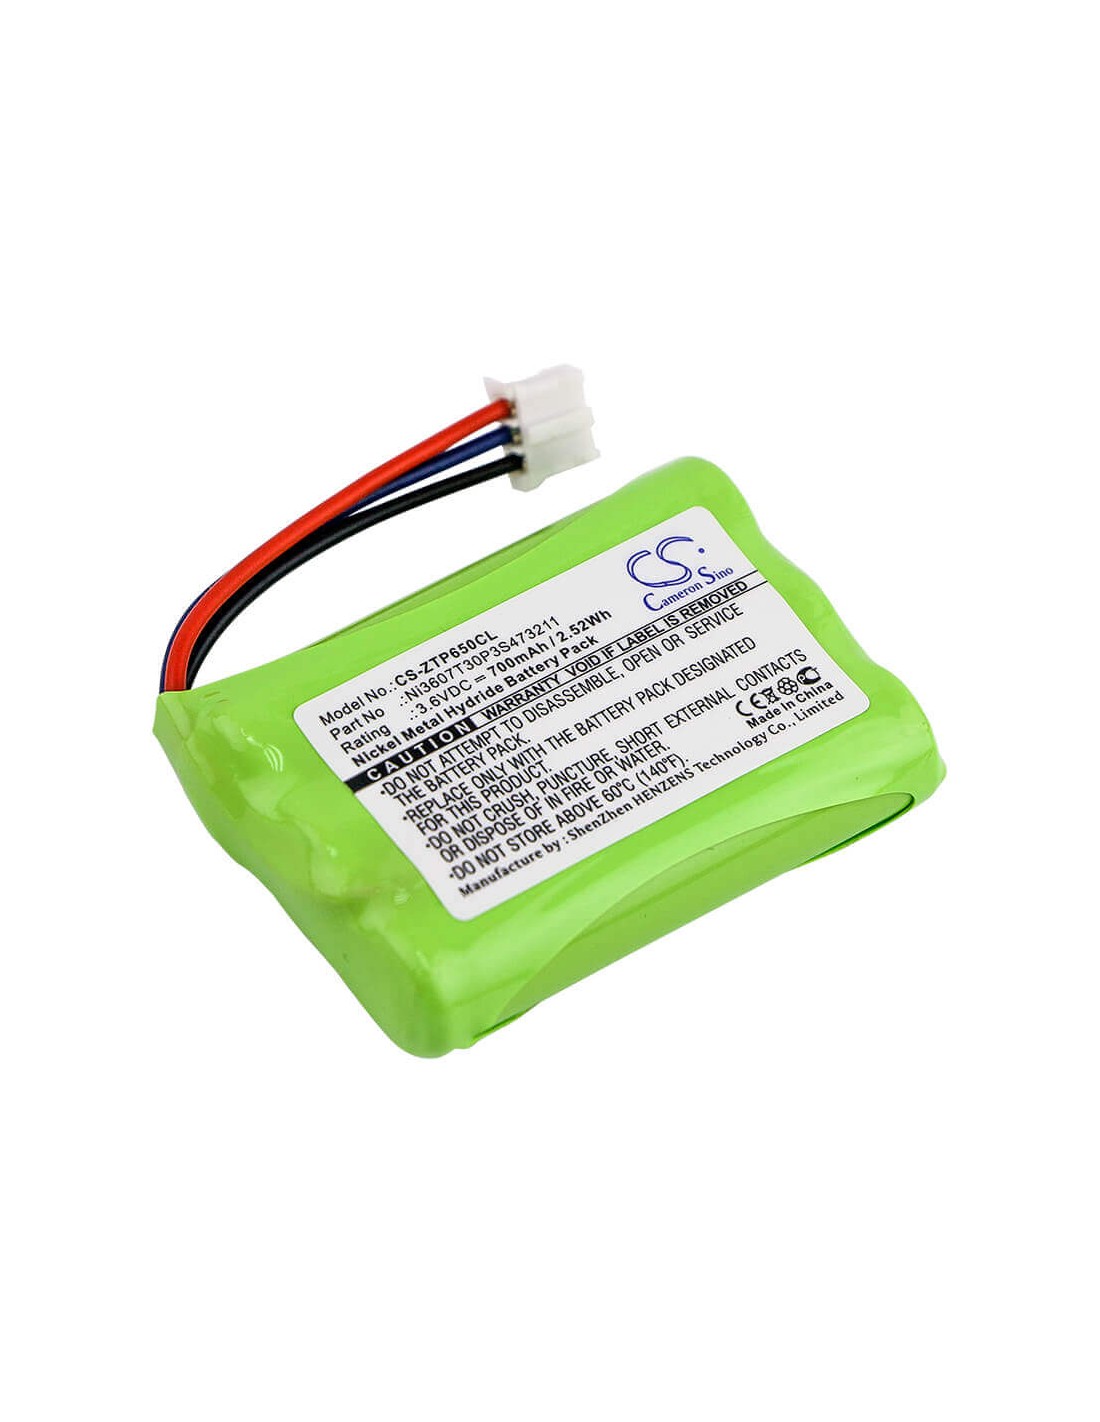 Battery for Zte, Wp650, Wp850 3.6V, 700mAh - 2.52Wh